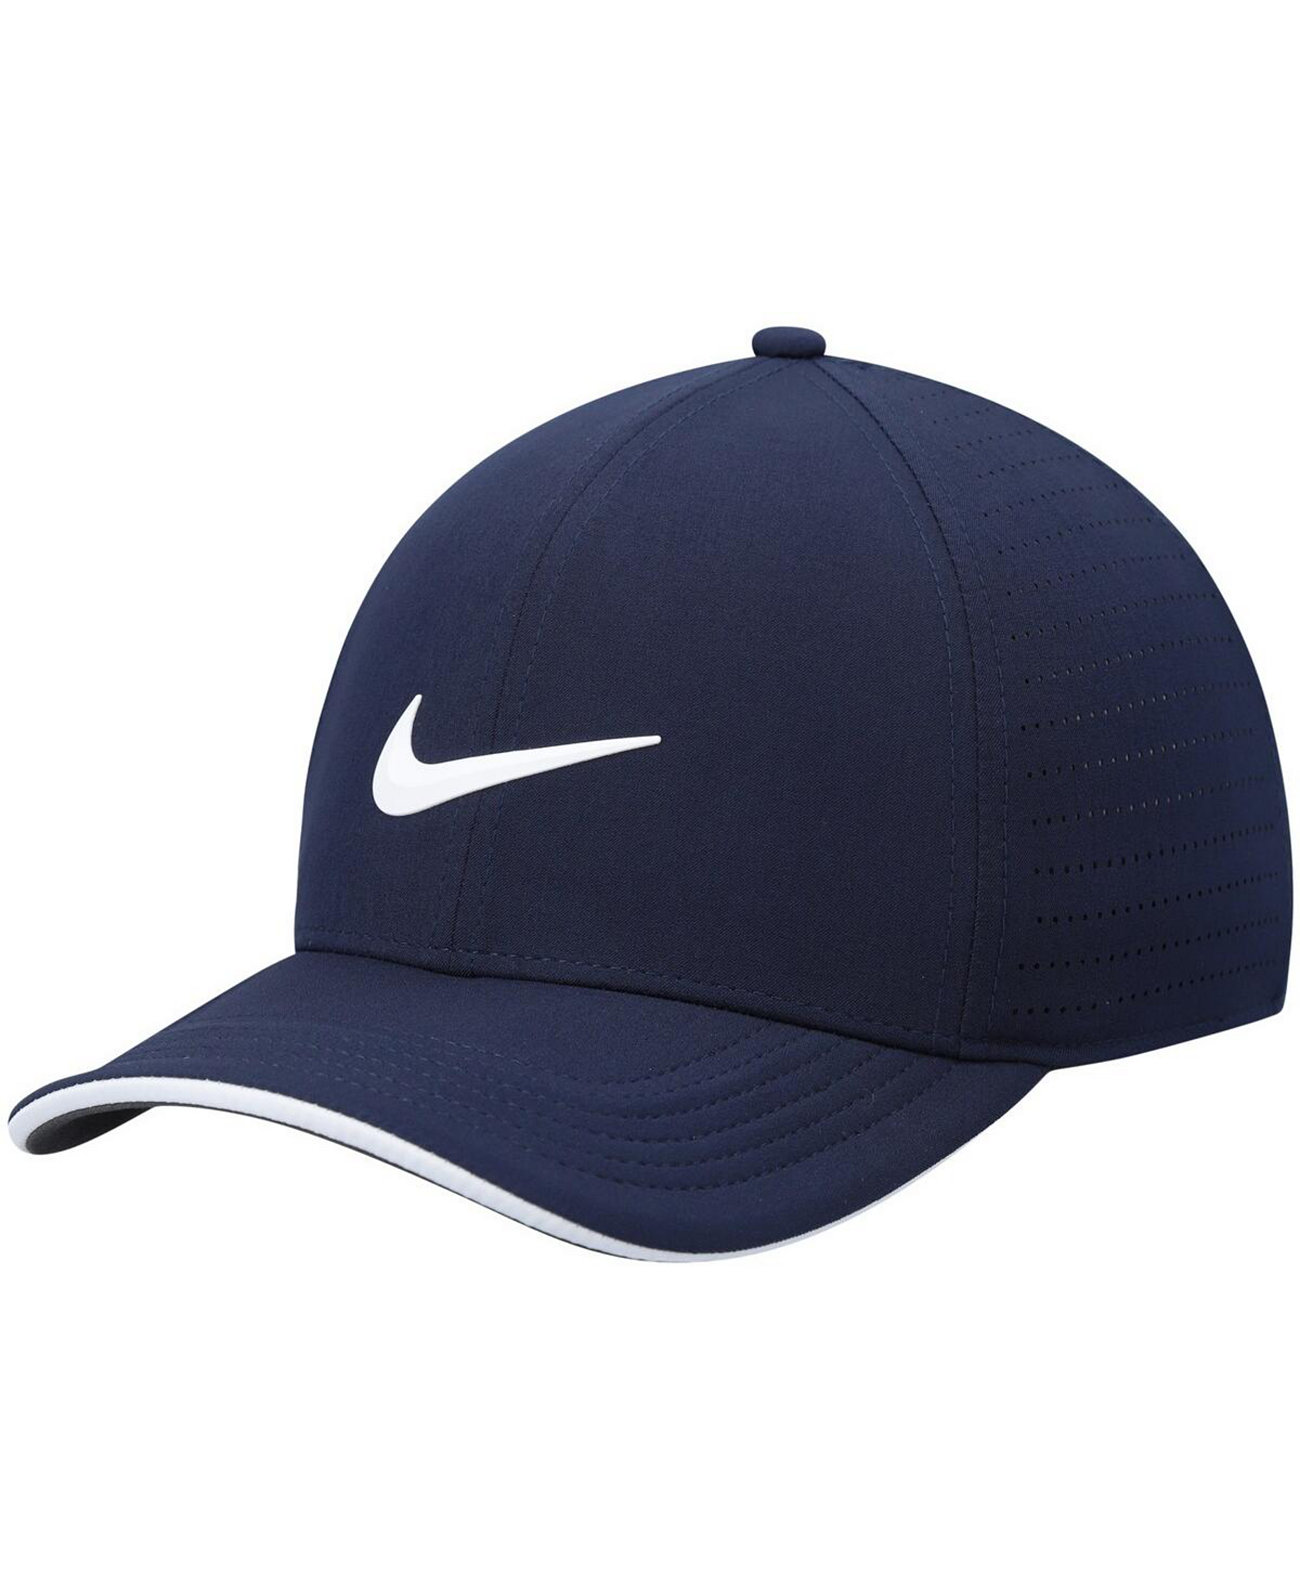 Мужская темно-синяя приталенная кепка Aerobill Classic99 Performance Nike